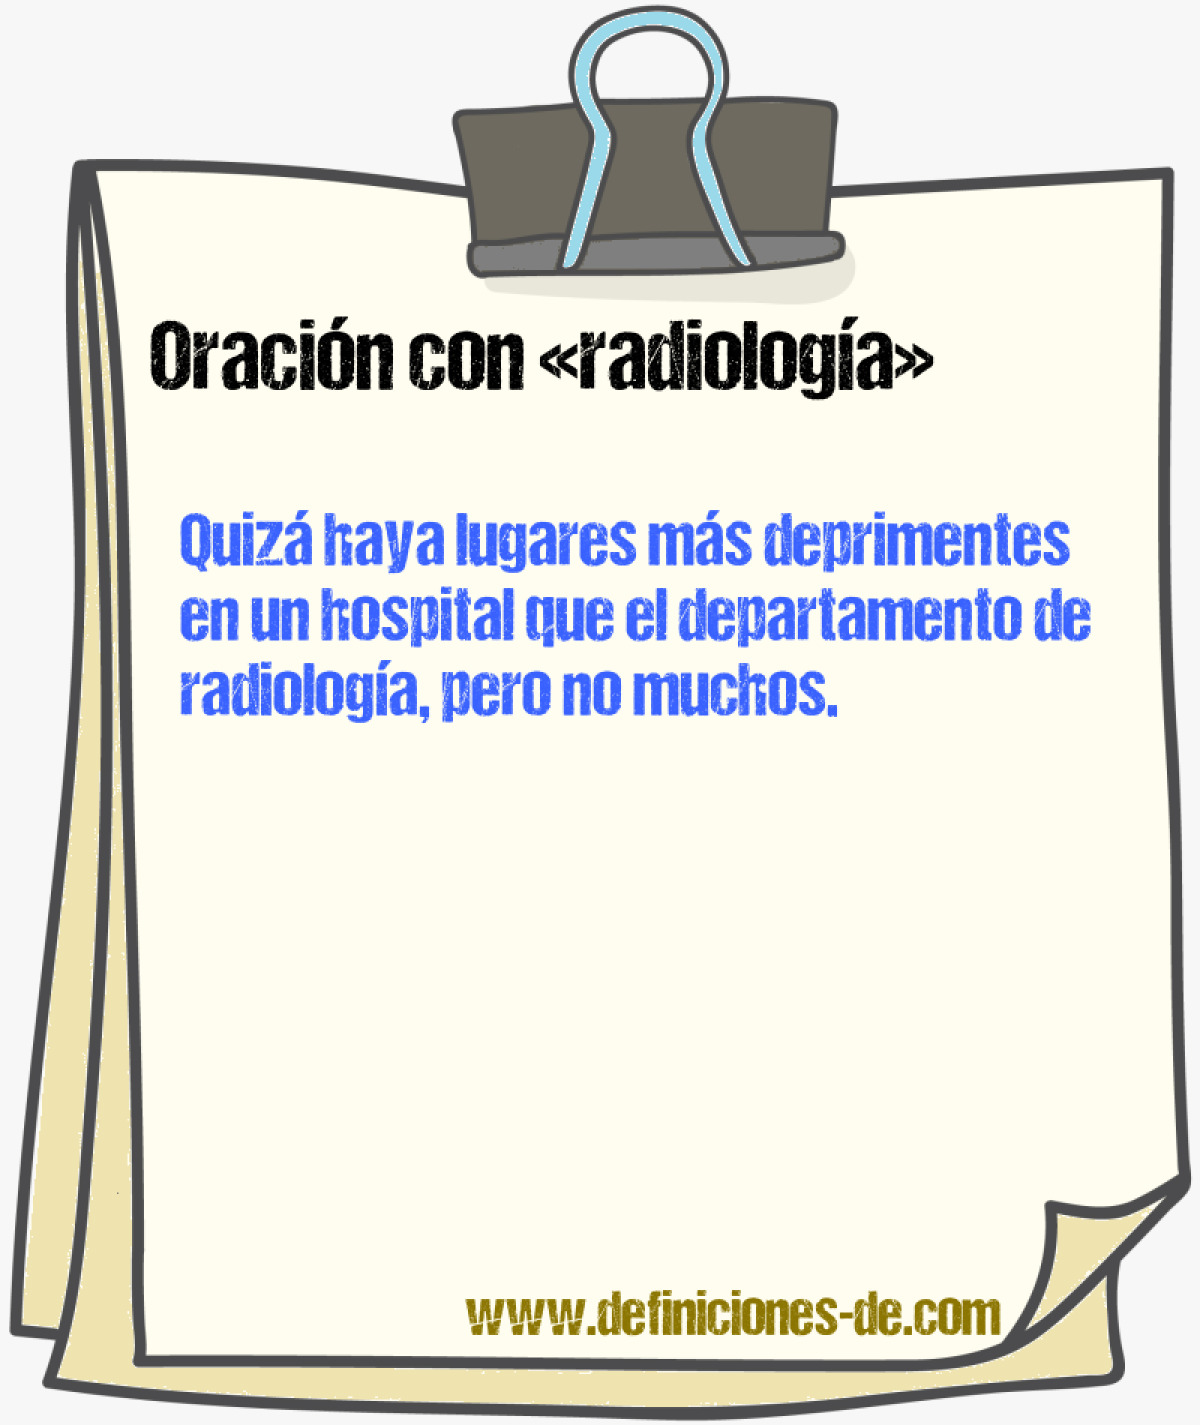 Ejemplos de oraciones con radiologa